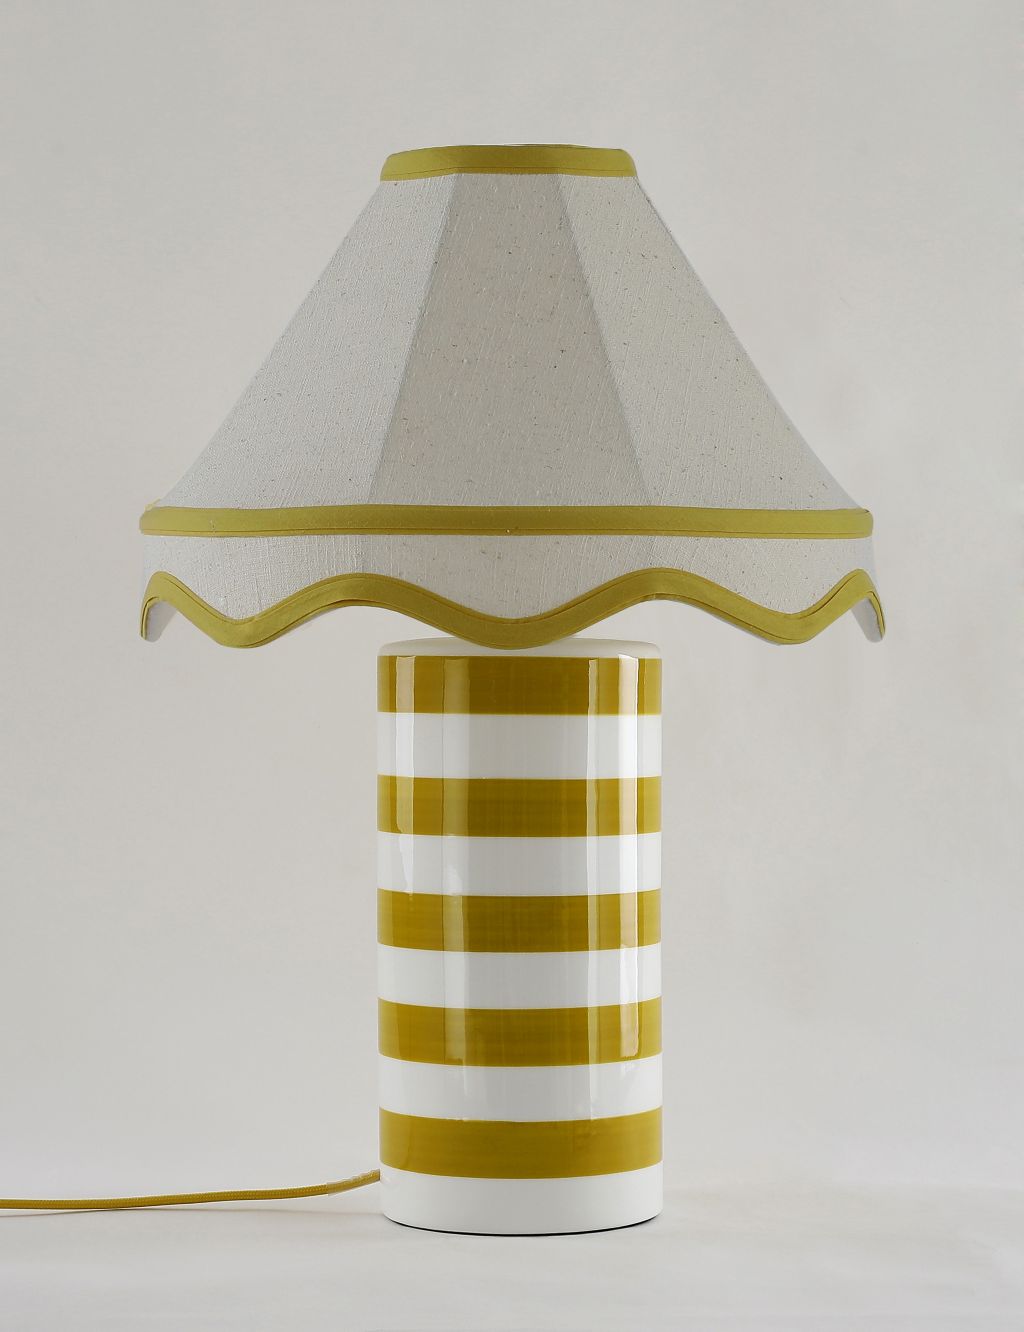 Hattie Striped Table Lamp